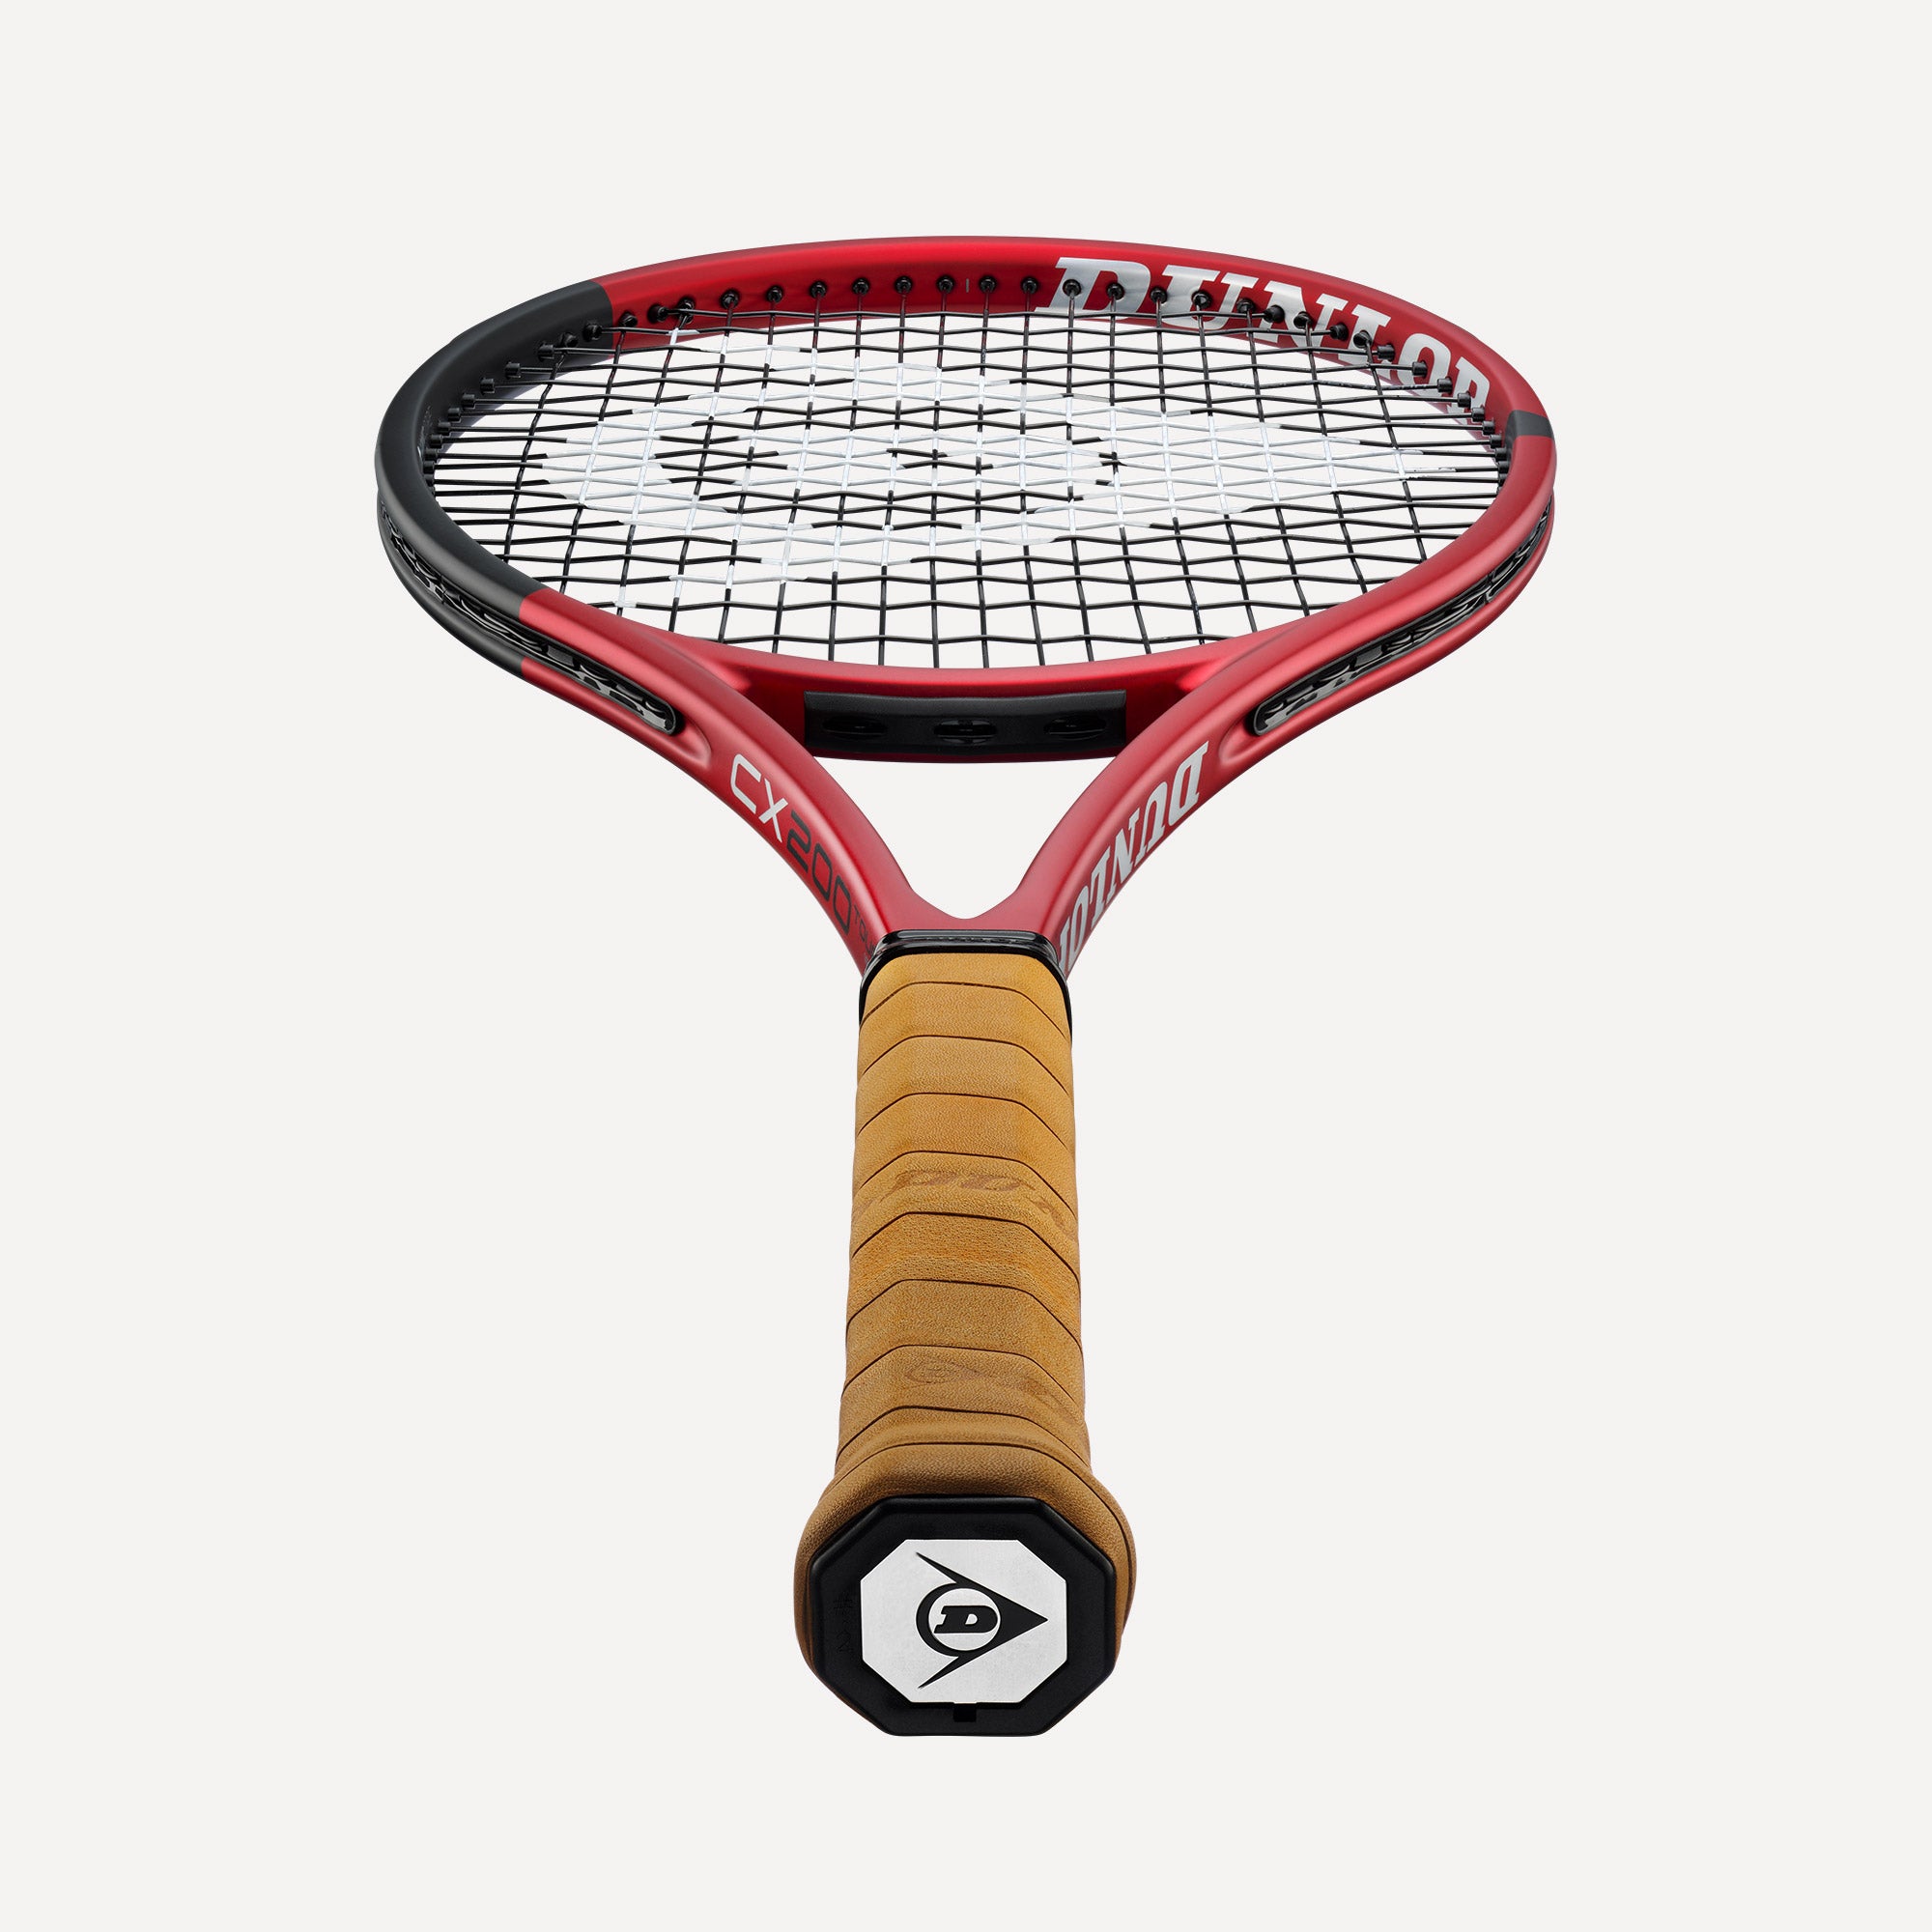 Dunlop CX 200 Tour 18x20 Tennis Racket Tennis Only